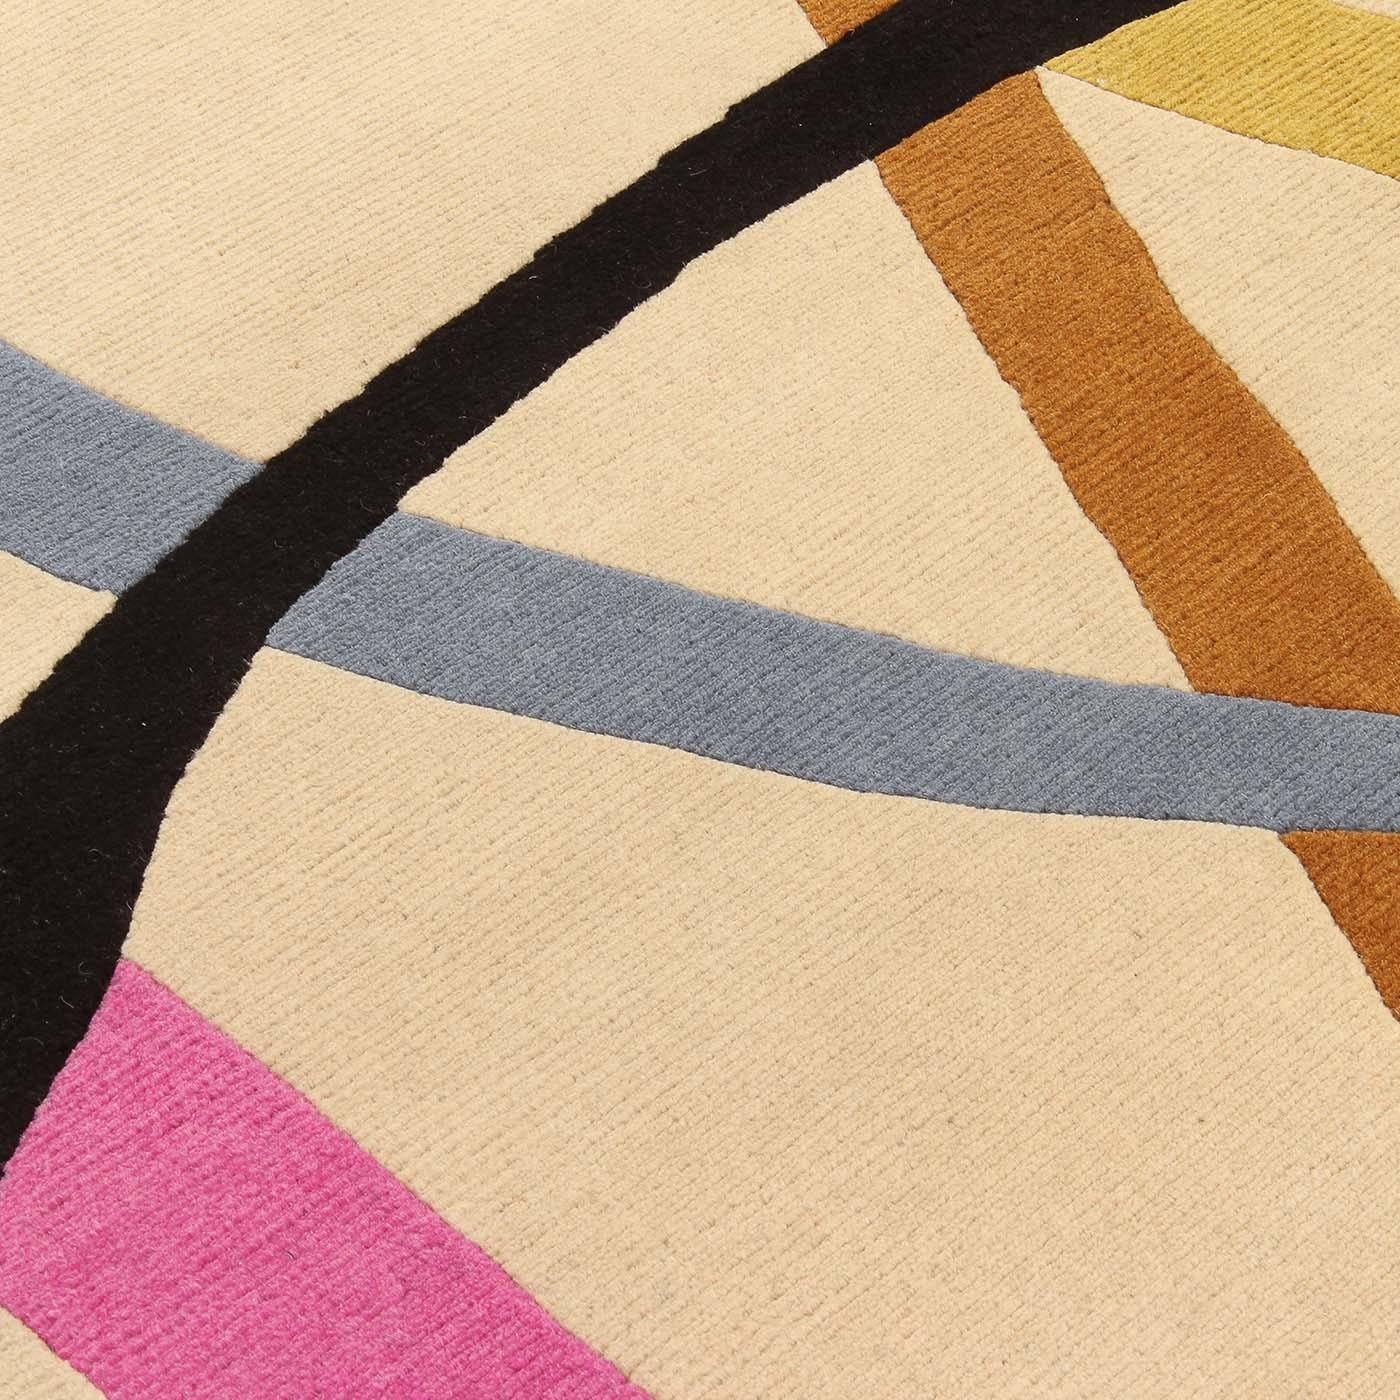 Elegant und verspielt, die handgezeichneten Linien in dieser Komposition schaffen einen einzigartigen und eleganten Teppich. Ein faszinierendes dreidimensionales Muster, das ursprünglich von Gio Ponti entworfen wurde, um eine zeitgenössische, aber